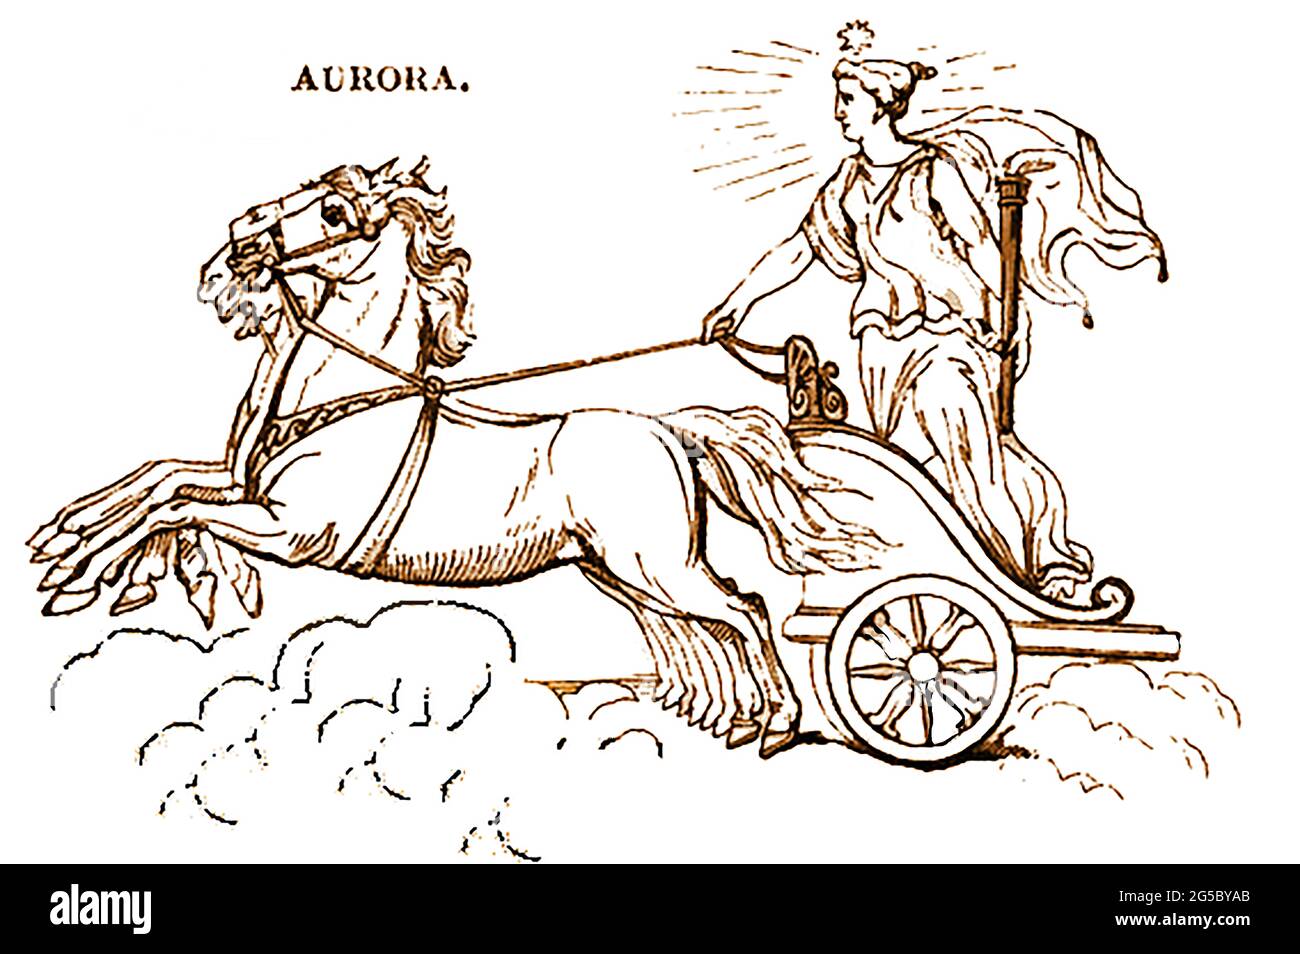 Una rappresentazione del 1839 della figura mitologica Aurora la dea dell'alba nella mitologia greca e romana. Si è evoluta dal nome di una precedente dea dell'alba indo-europea, Hausos. Nella poesia greca Aurōra era la madre degli Anemoi (i Venti), e la discendenza di Astraeo, il padre delle stelle. Foto Stock